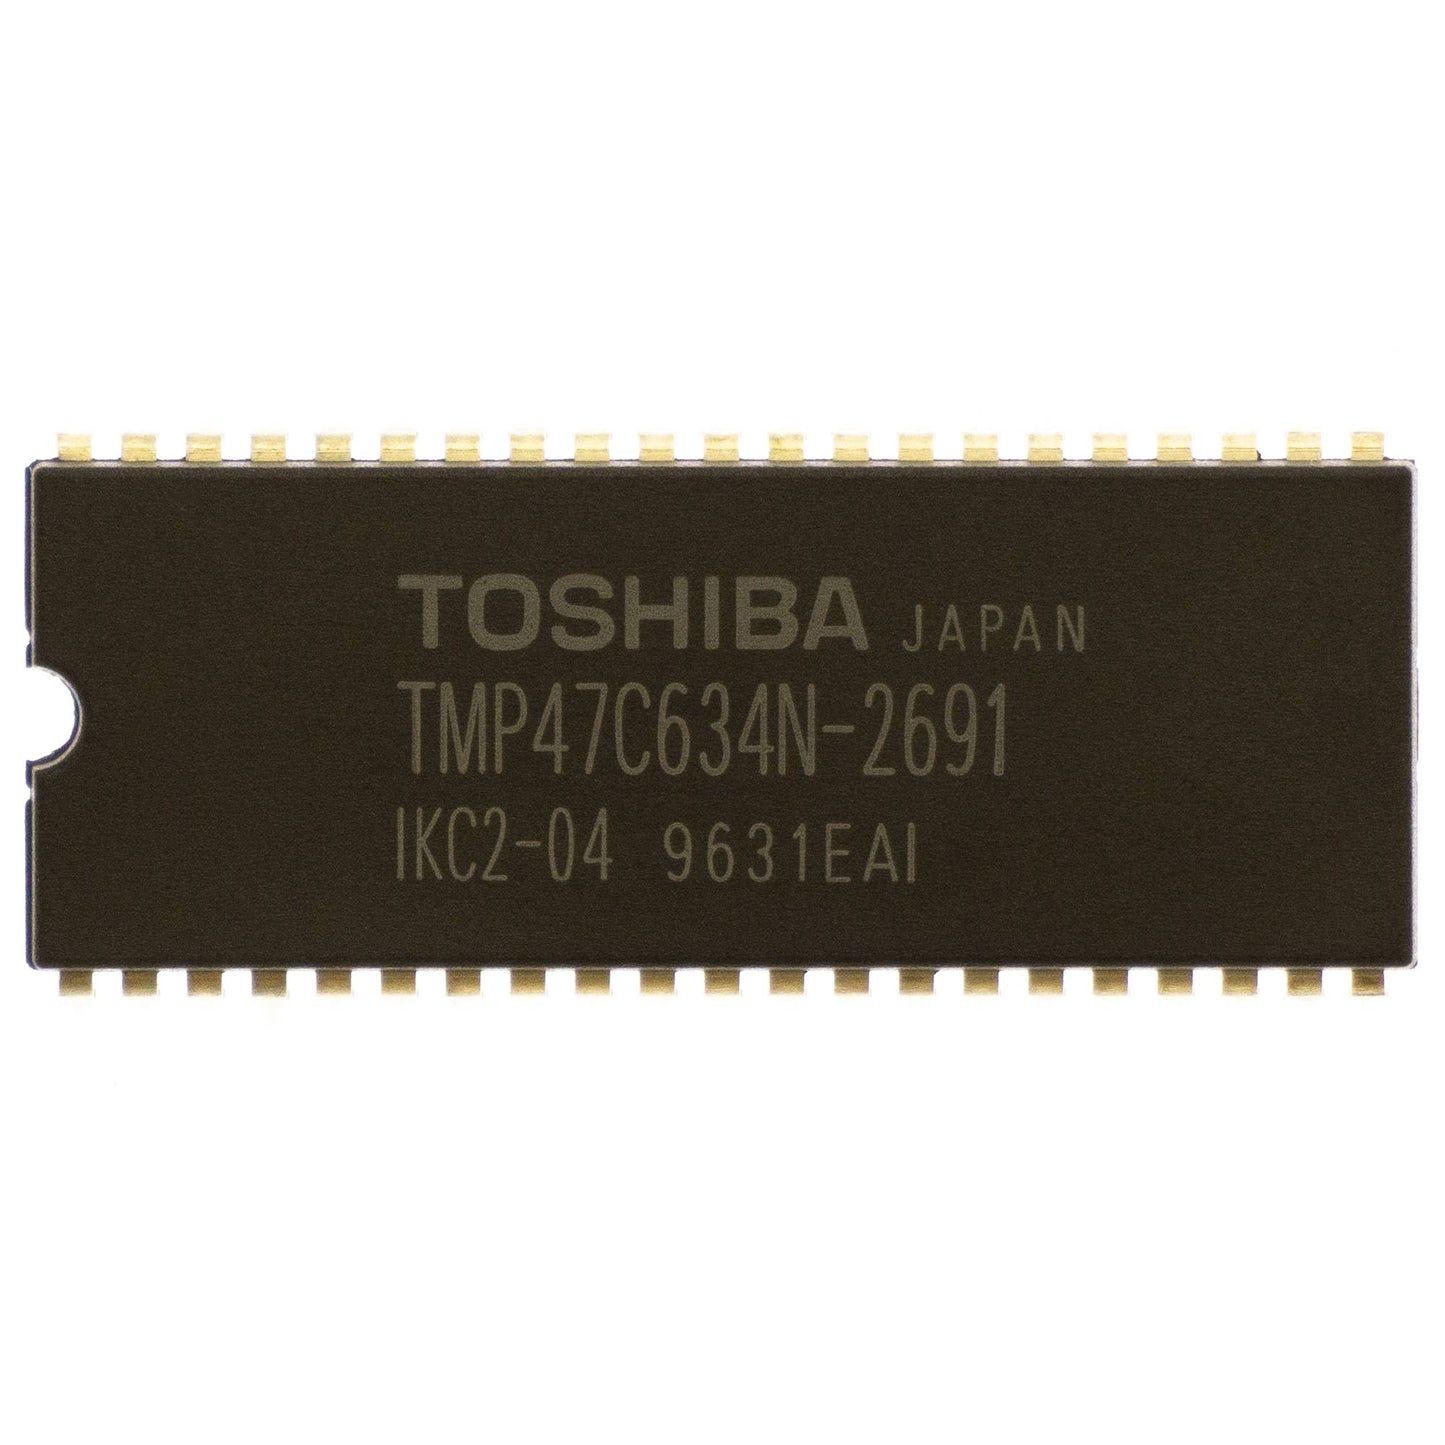 Toshiba TMP47C634N-2691 circuito integrato, transistor, componente elettronico, 42 contatti